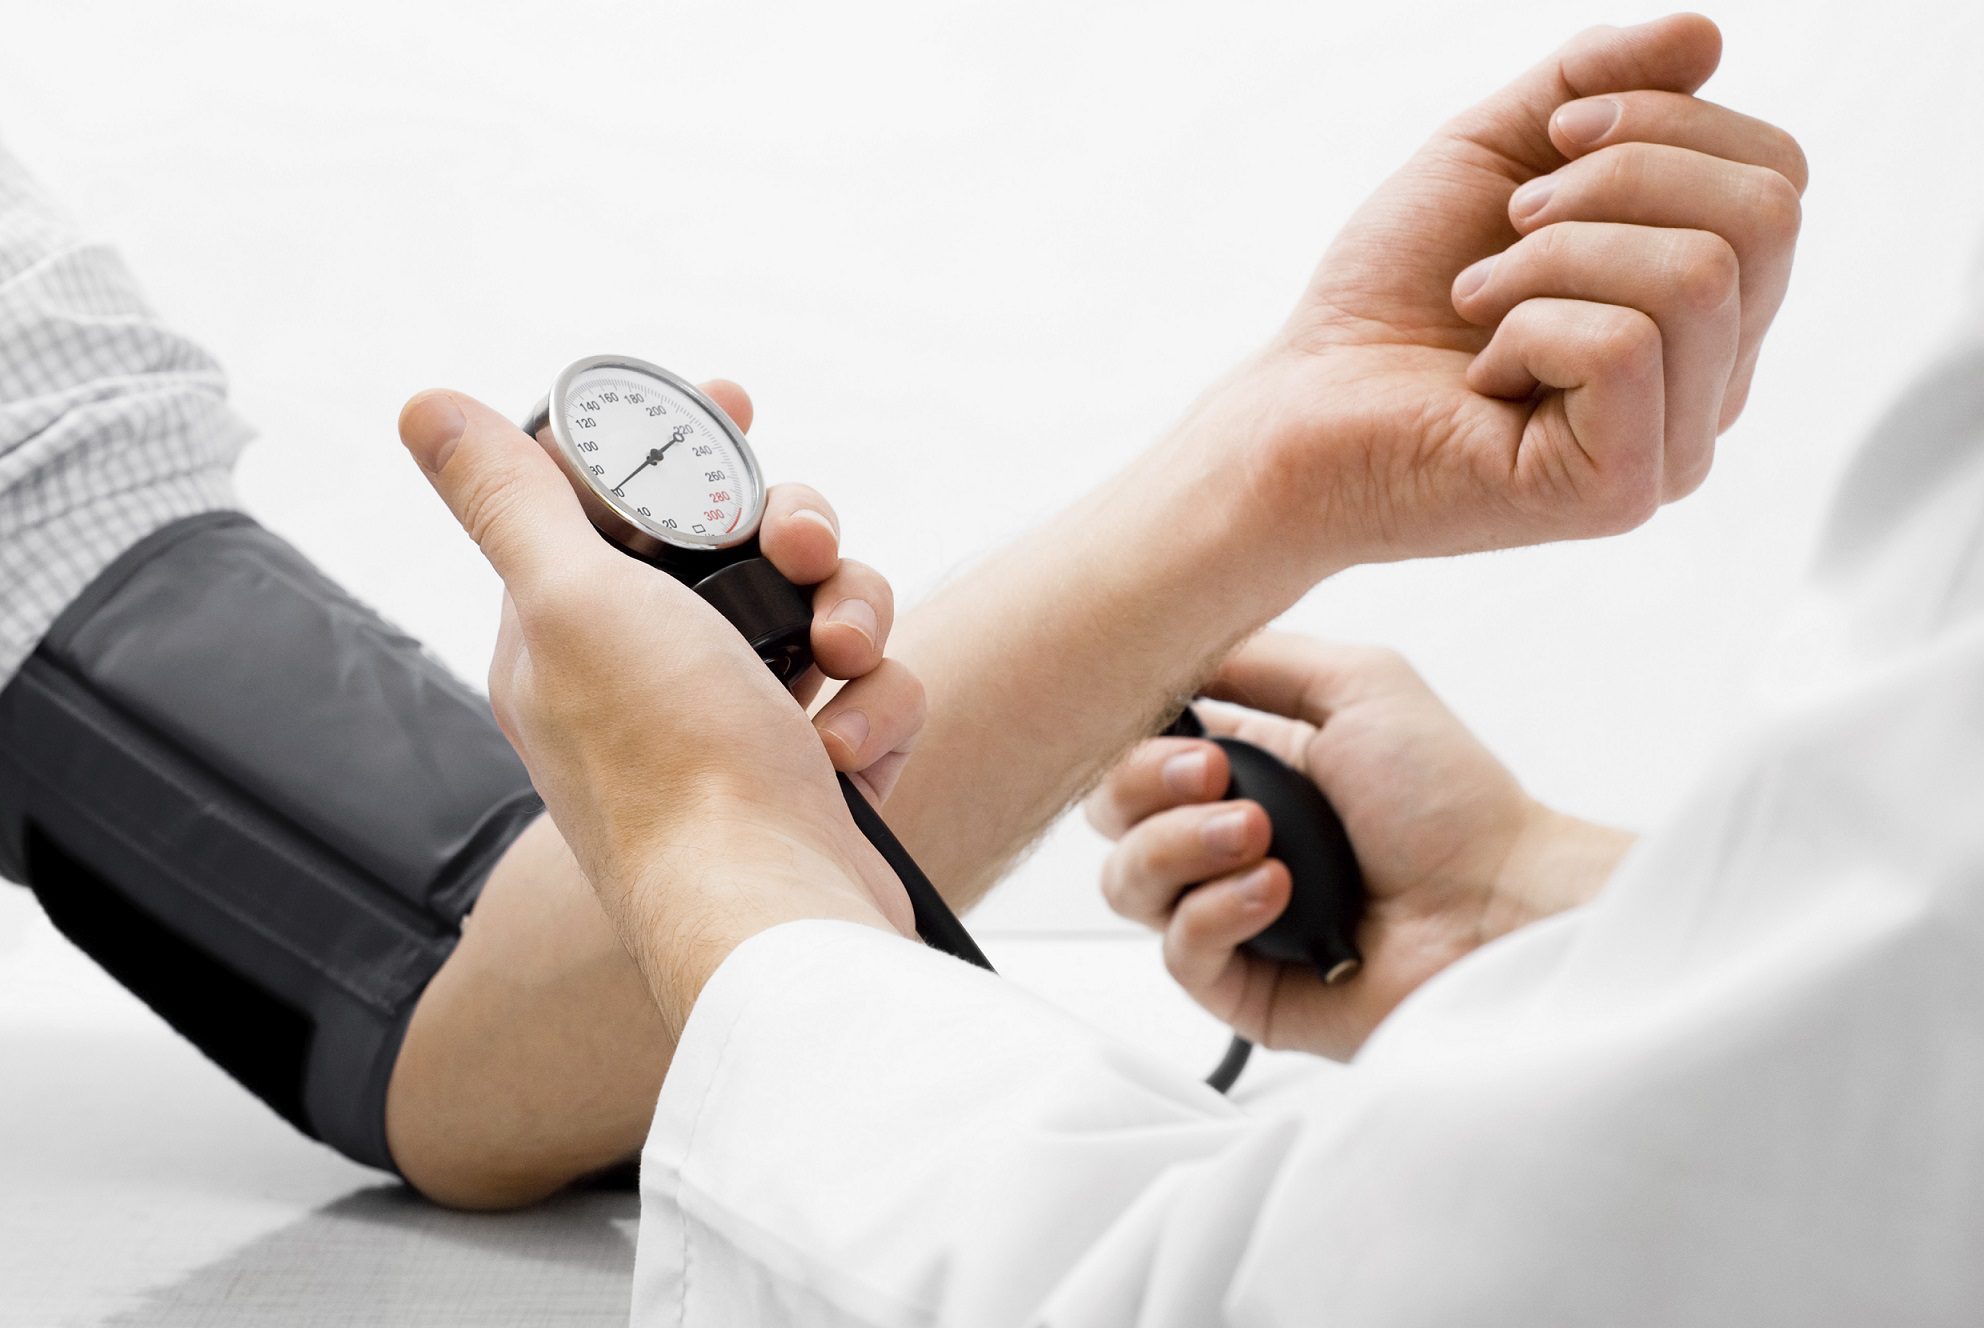 Hipertensão arterial: uma doença que exige cuidados e disciplina no tratamento